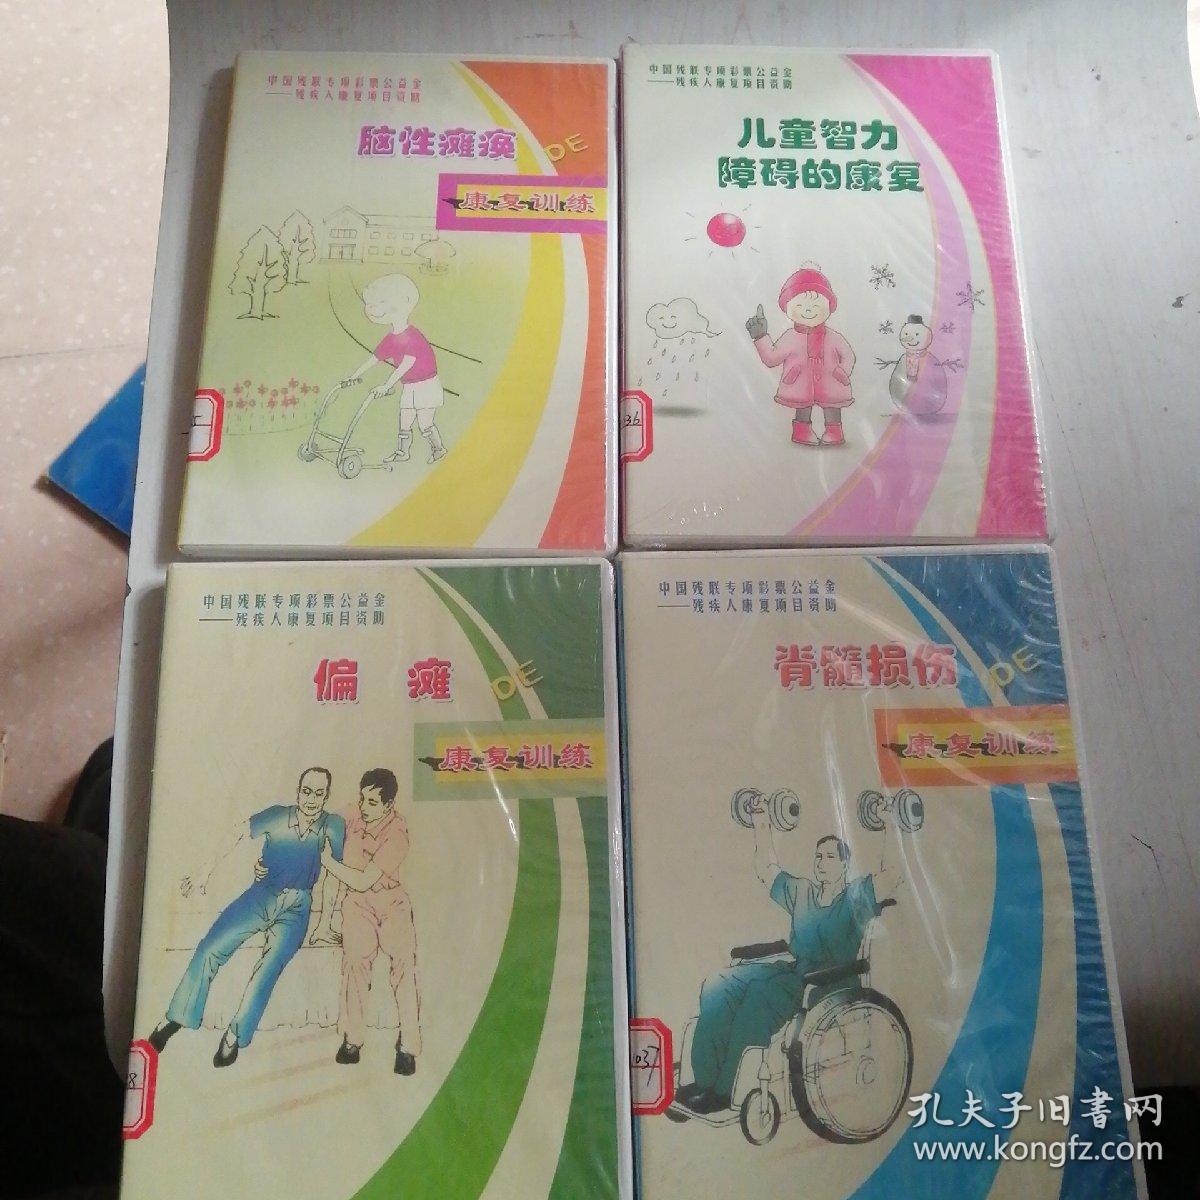 中国残联专项彩票公益金残疾人康复项目资助--脑性瘫痪-儿童智力障碍的康复-偏瘫-脊髓损伤4和合售光盘